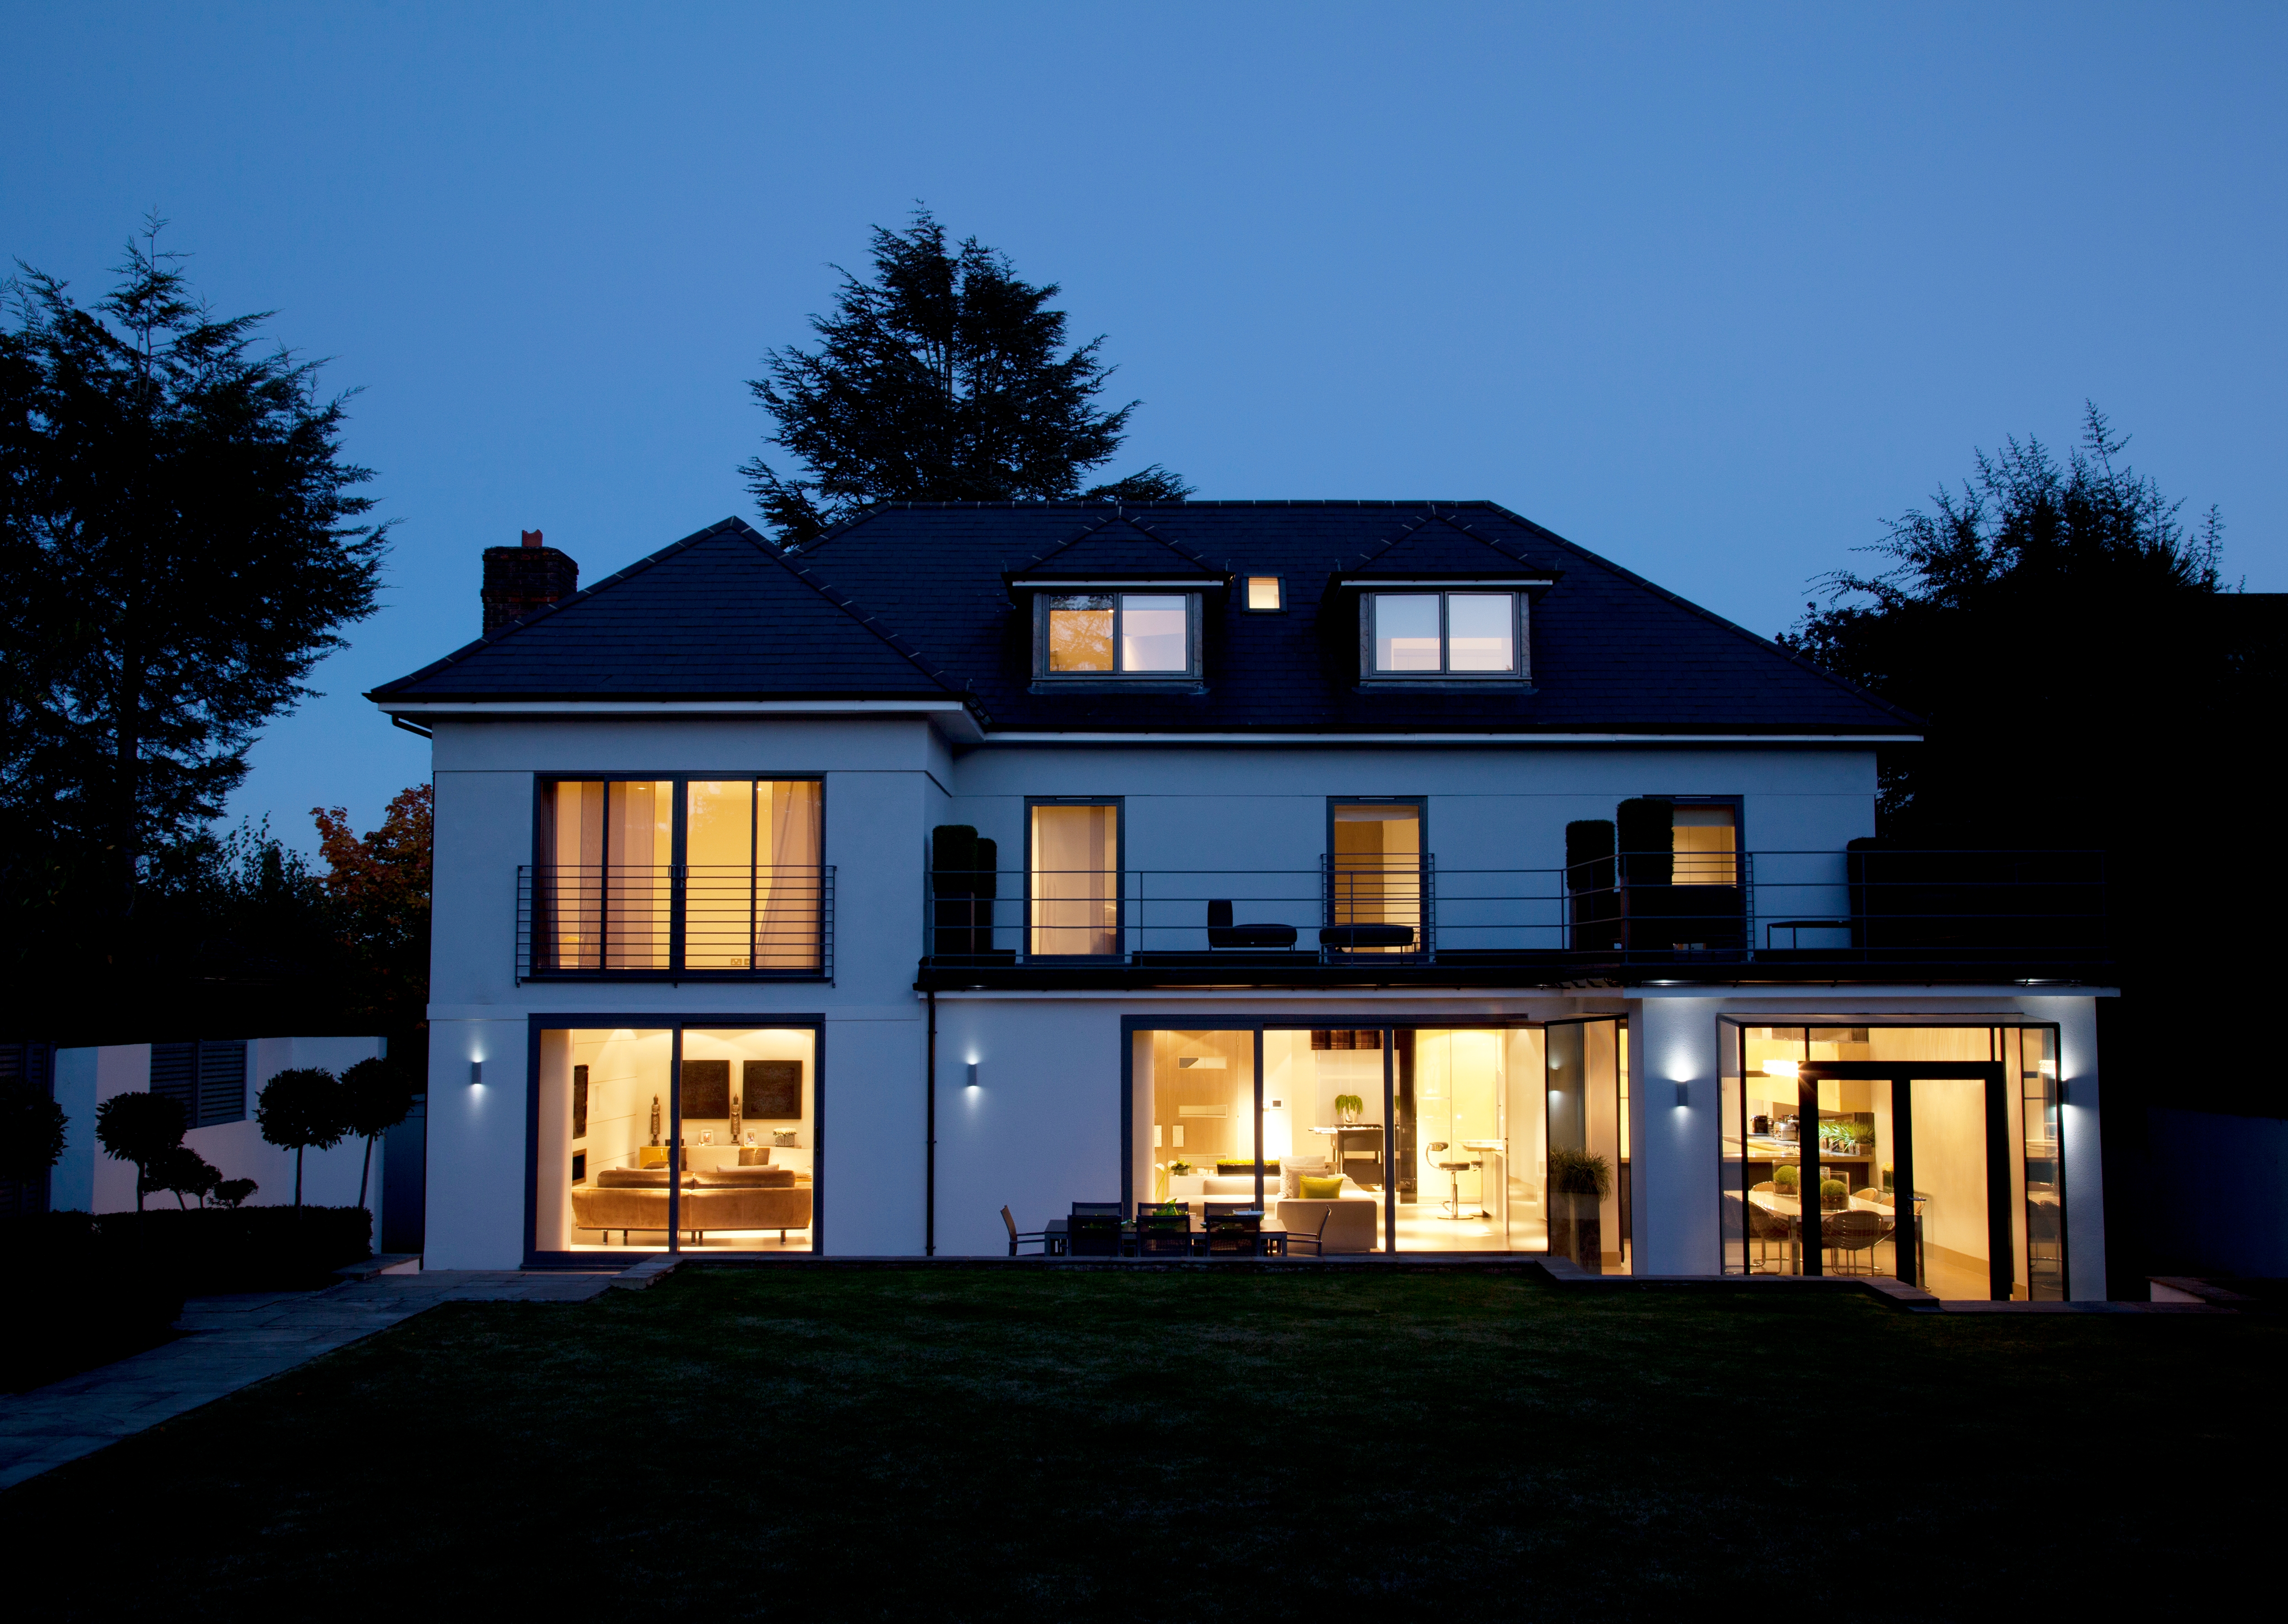 Casa moderna iluminada por la noche. | Fuente: Shutterstock